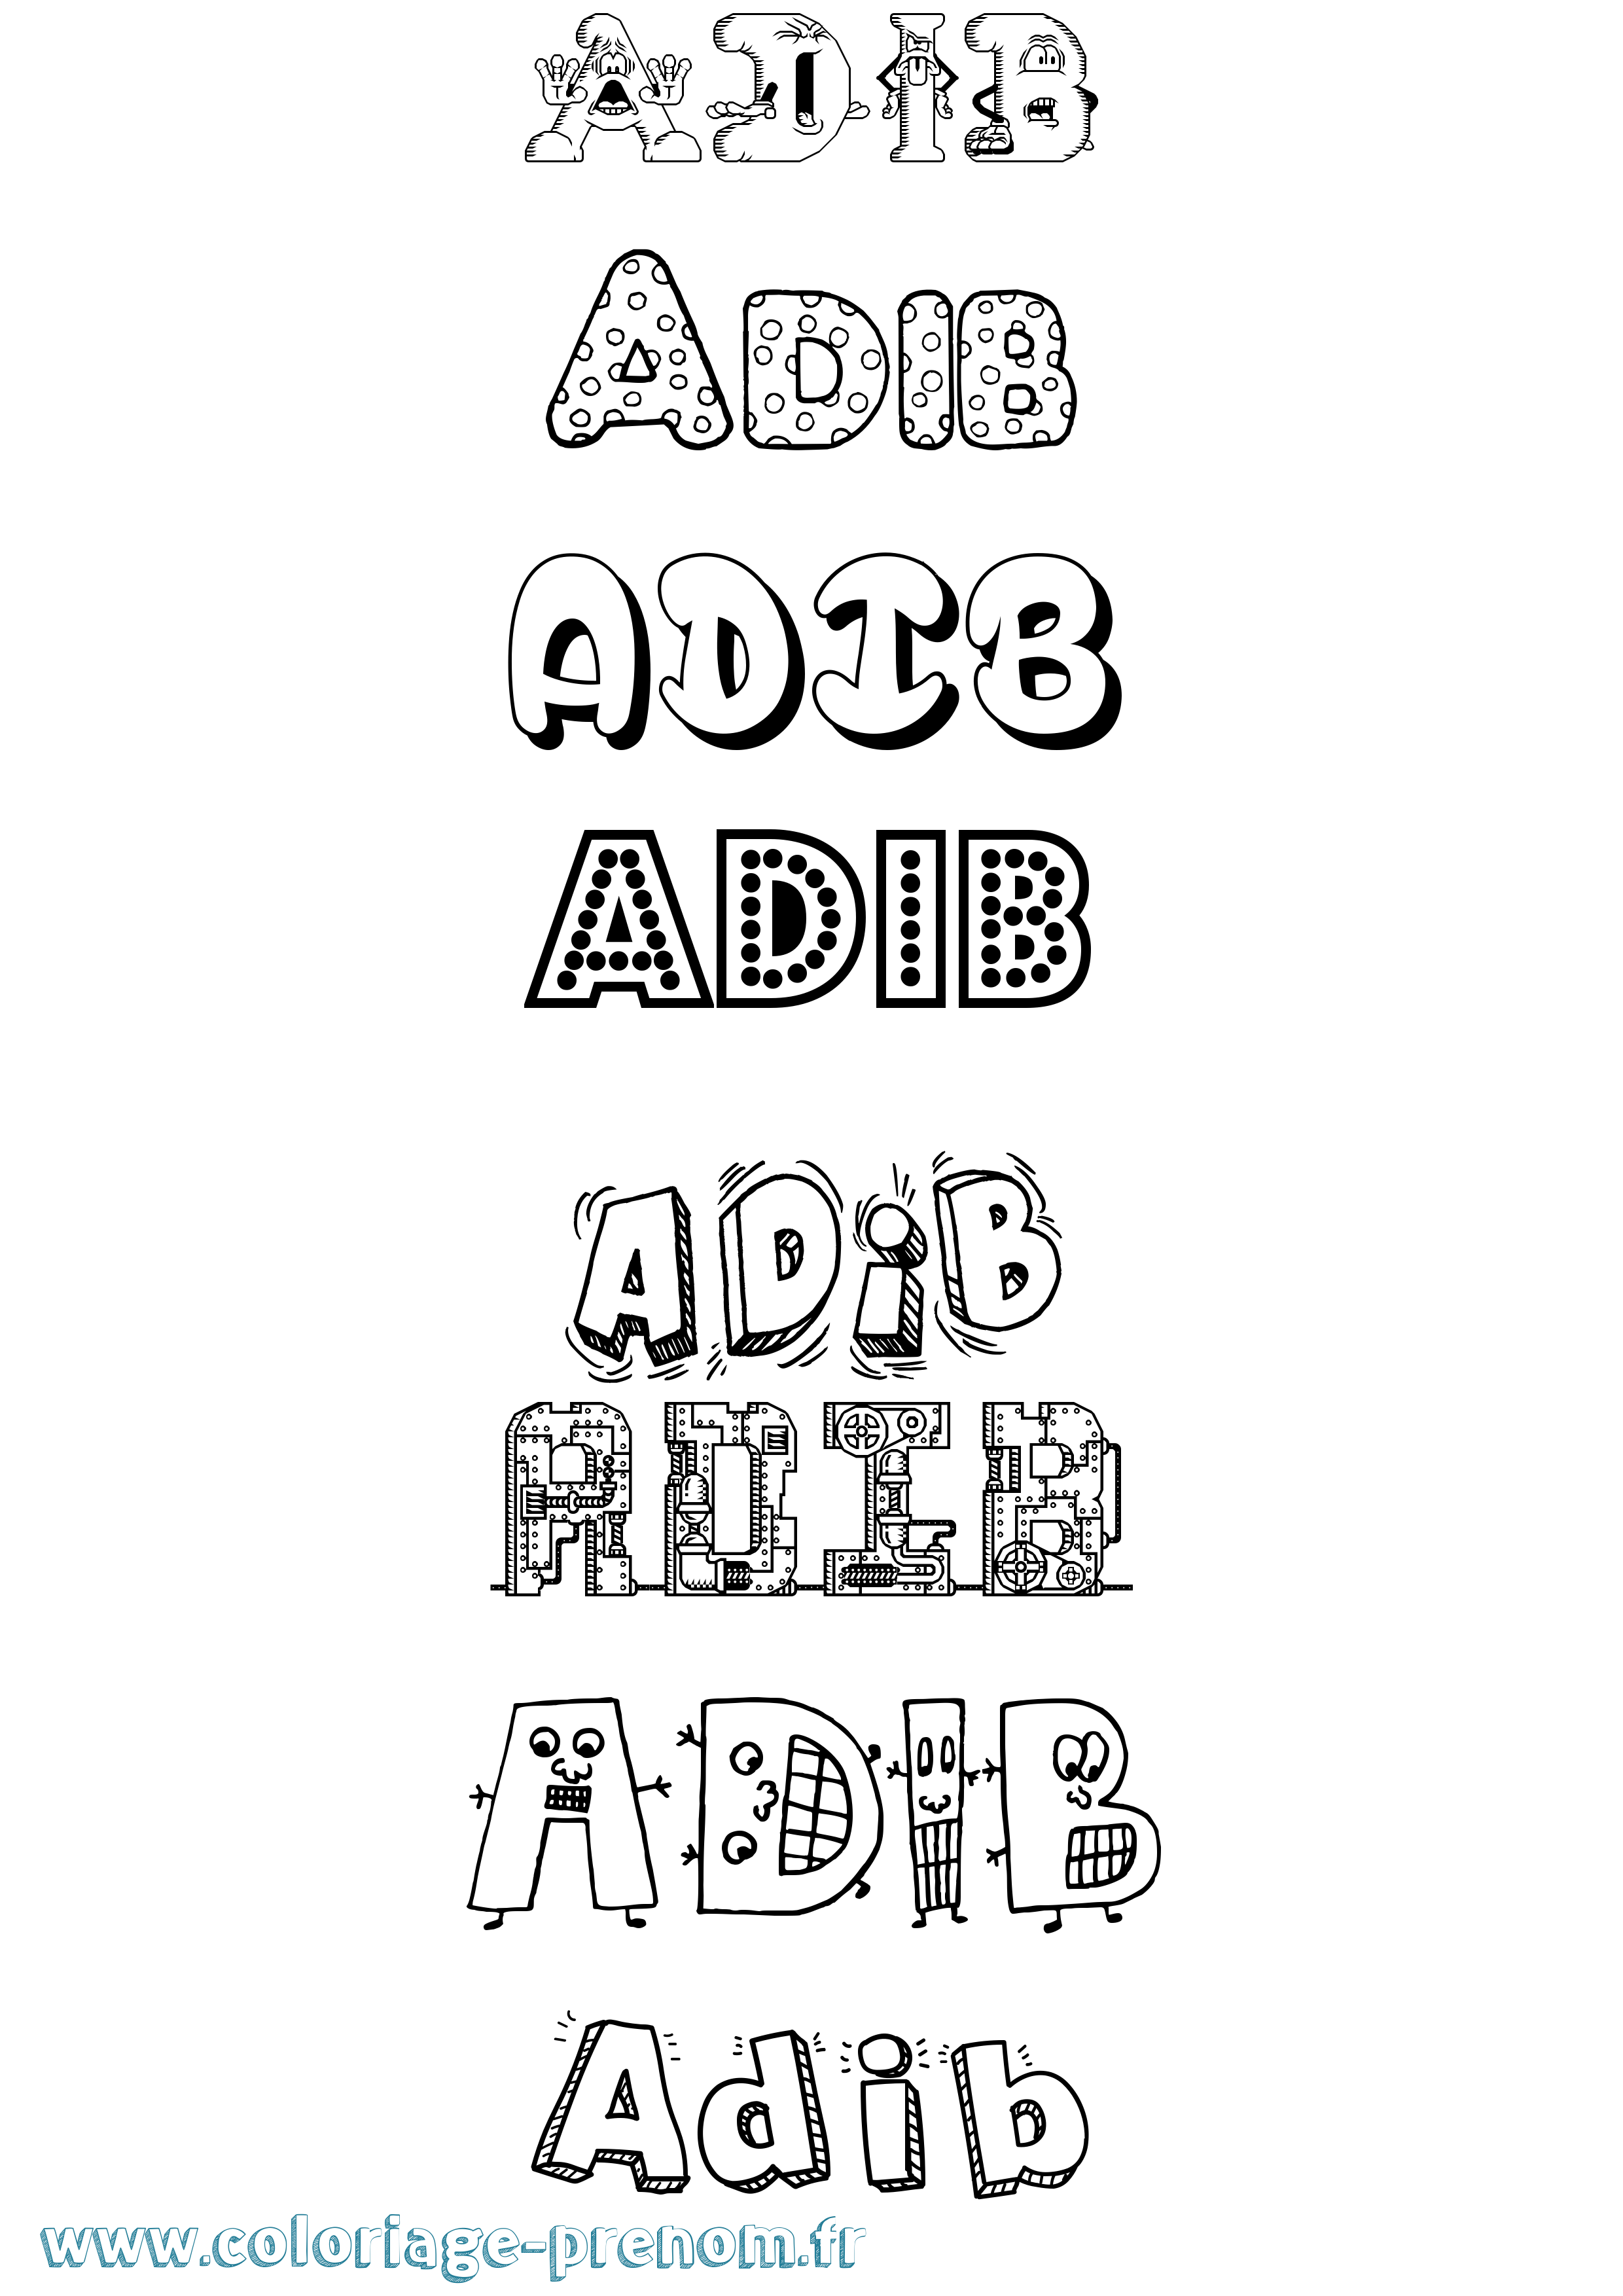 Coloriage prénom Adib Fun